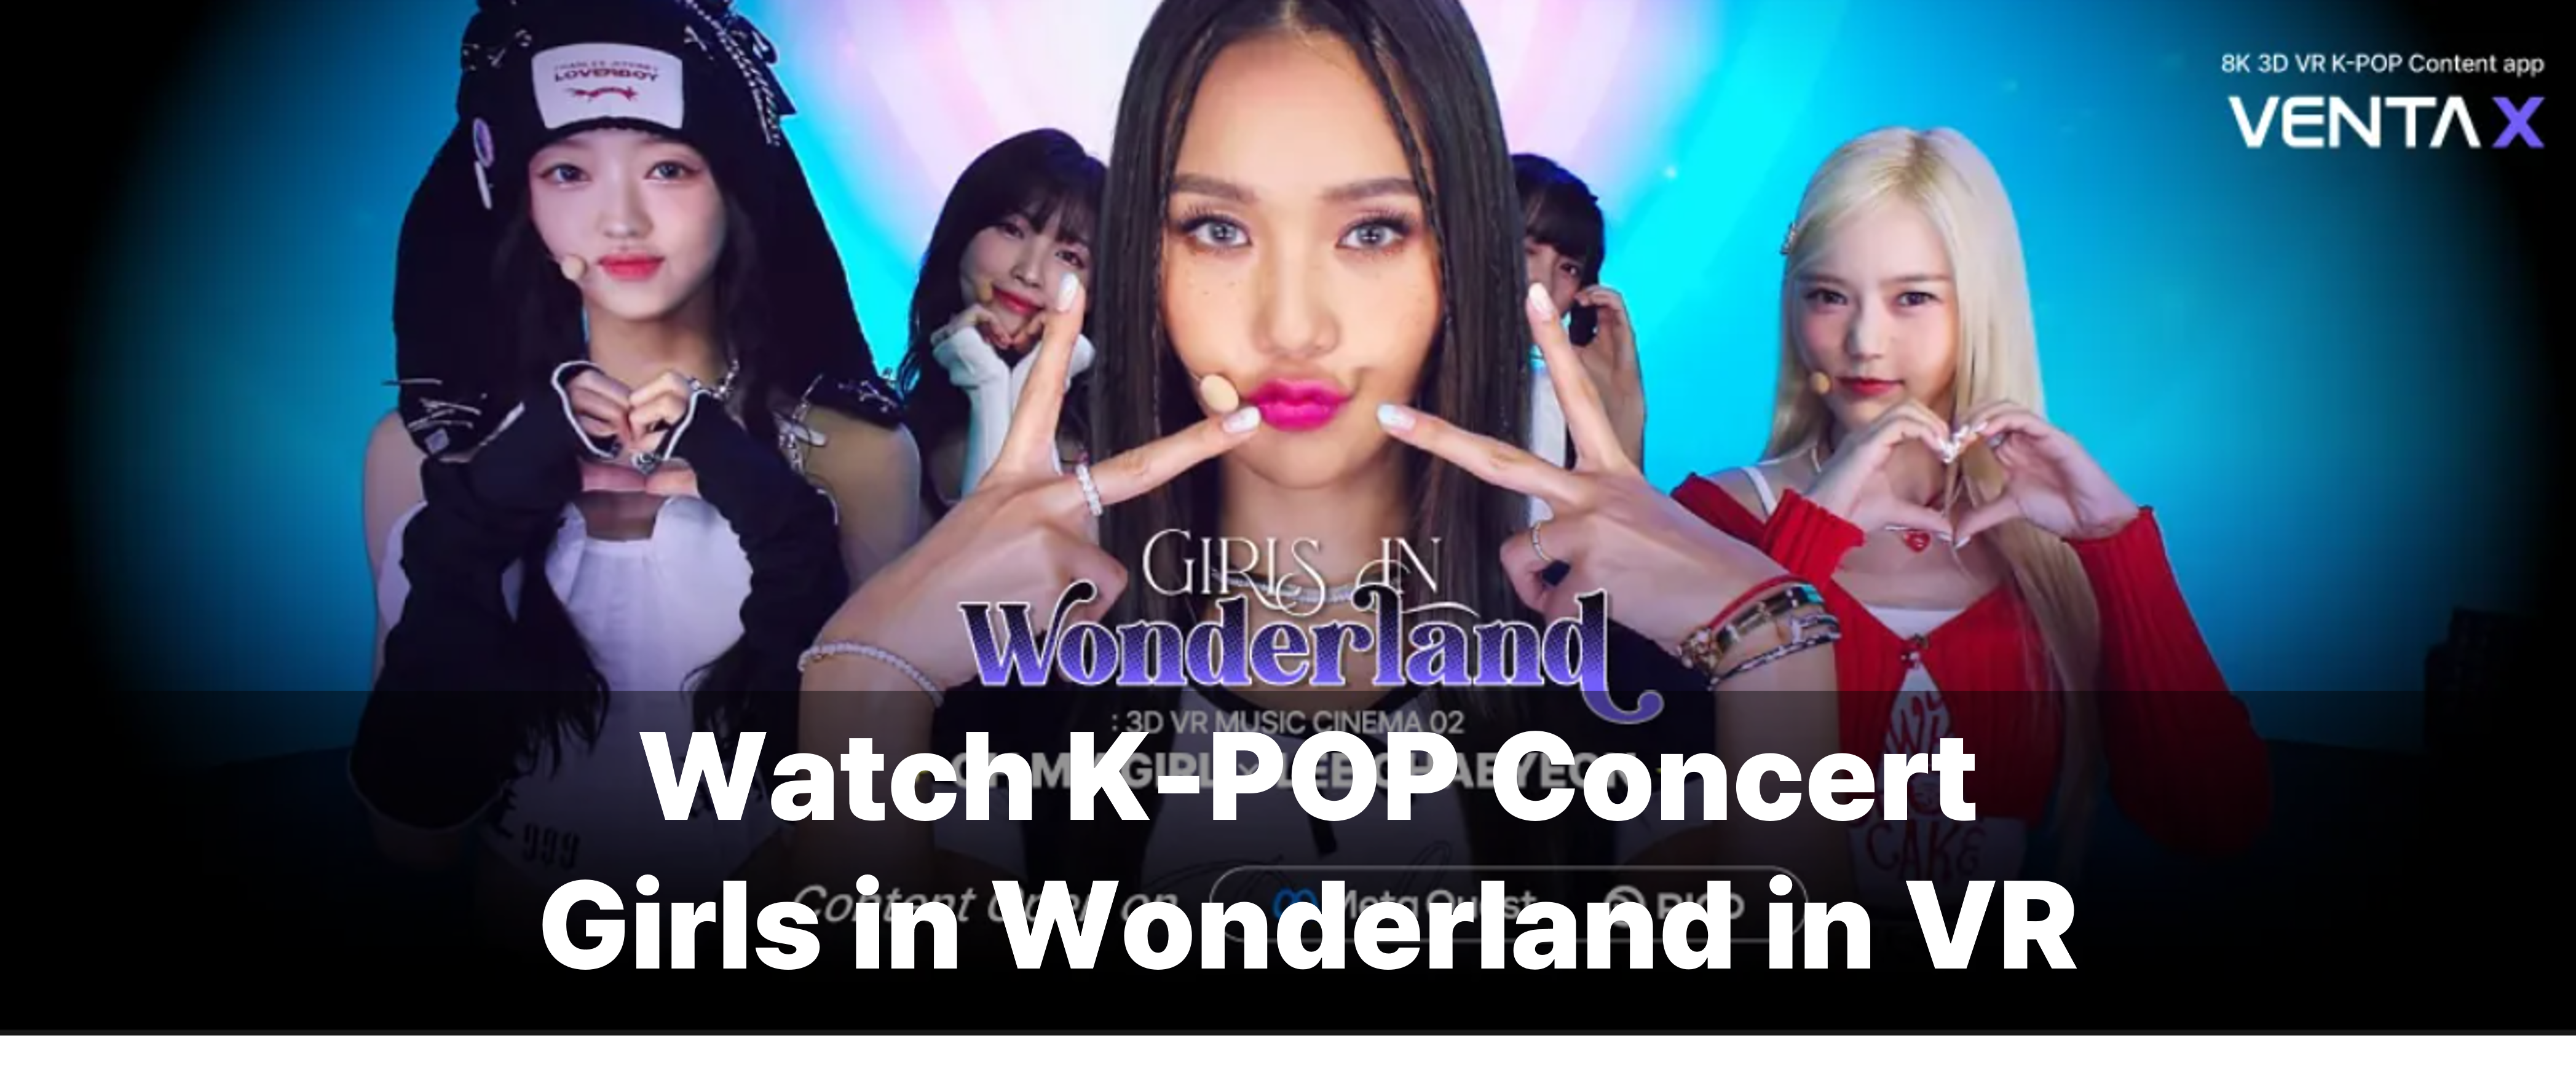 Watch K-POP Concert Girls in Wonderland in VR